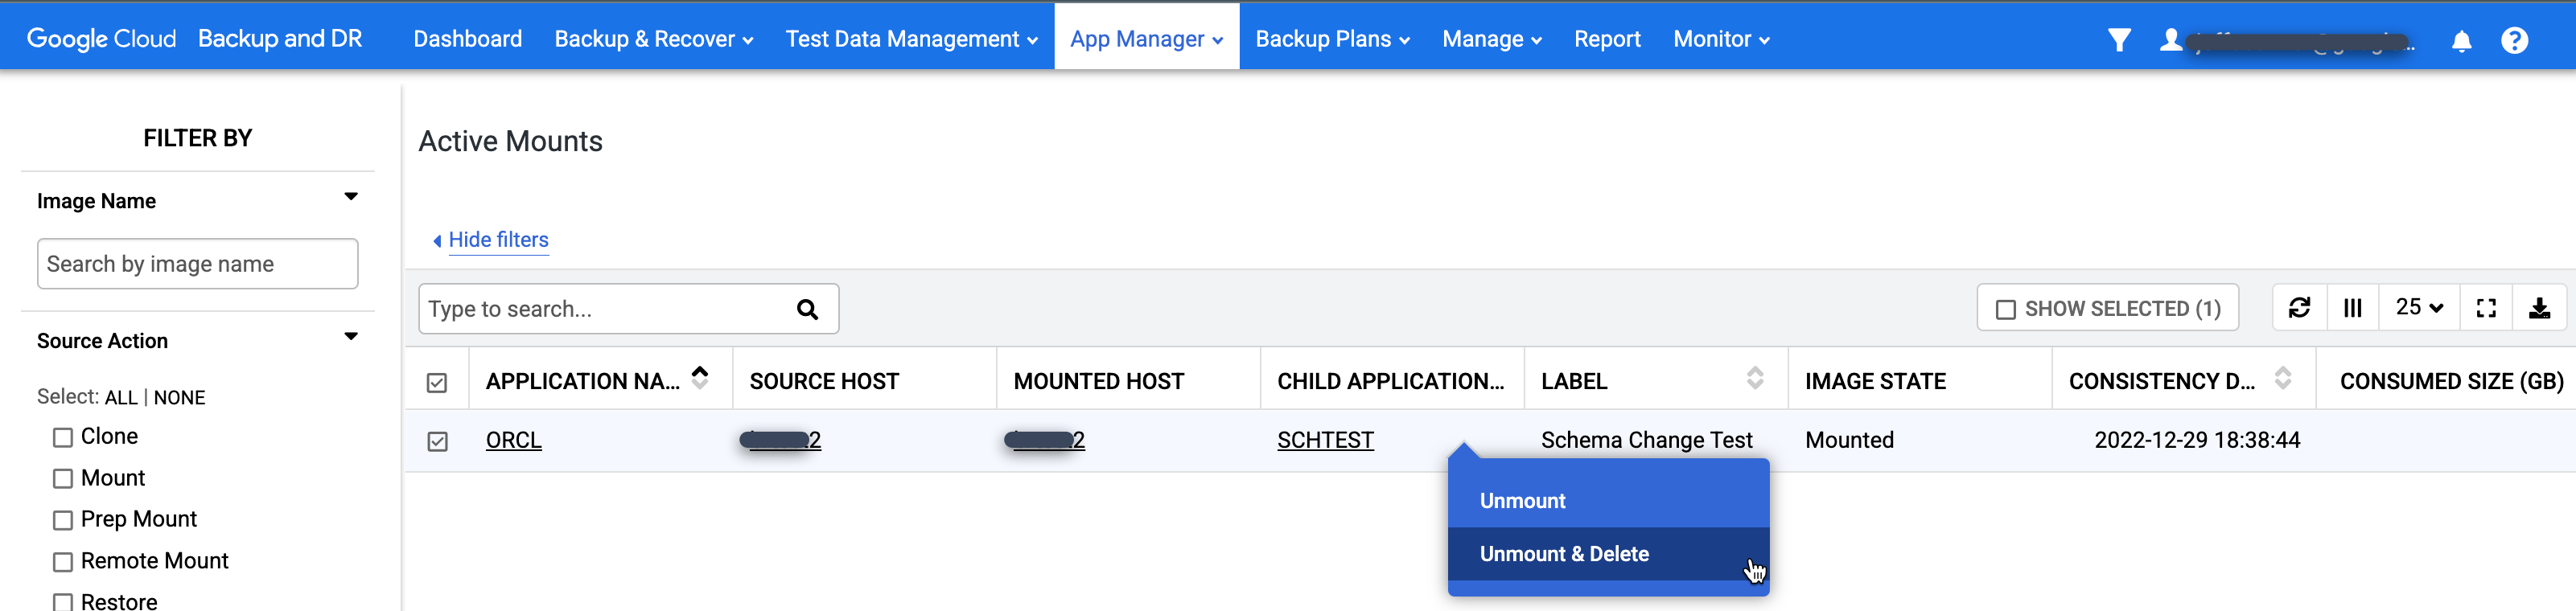 Página do console de gerenciamento de backup e DR que mostra o menu &quot;Desativar&quot; e &quot;Excluir&quot; disponível na página de ativações ativas do App Manager.